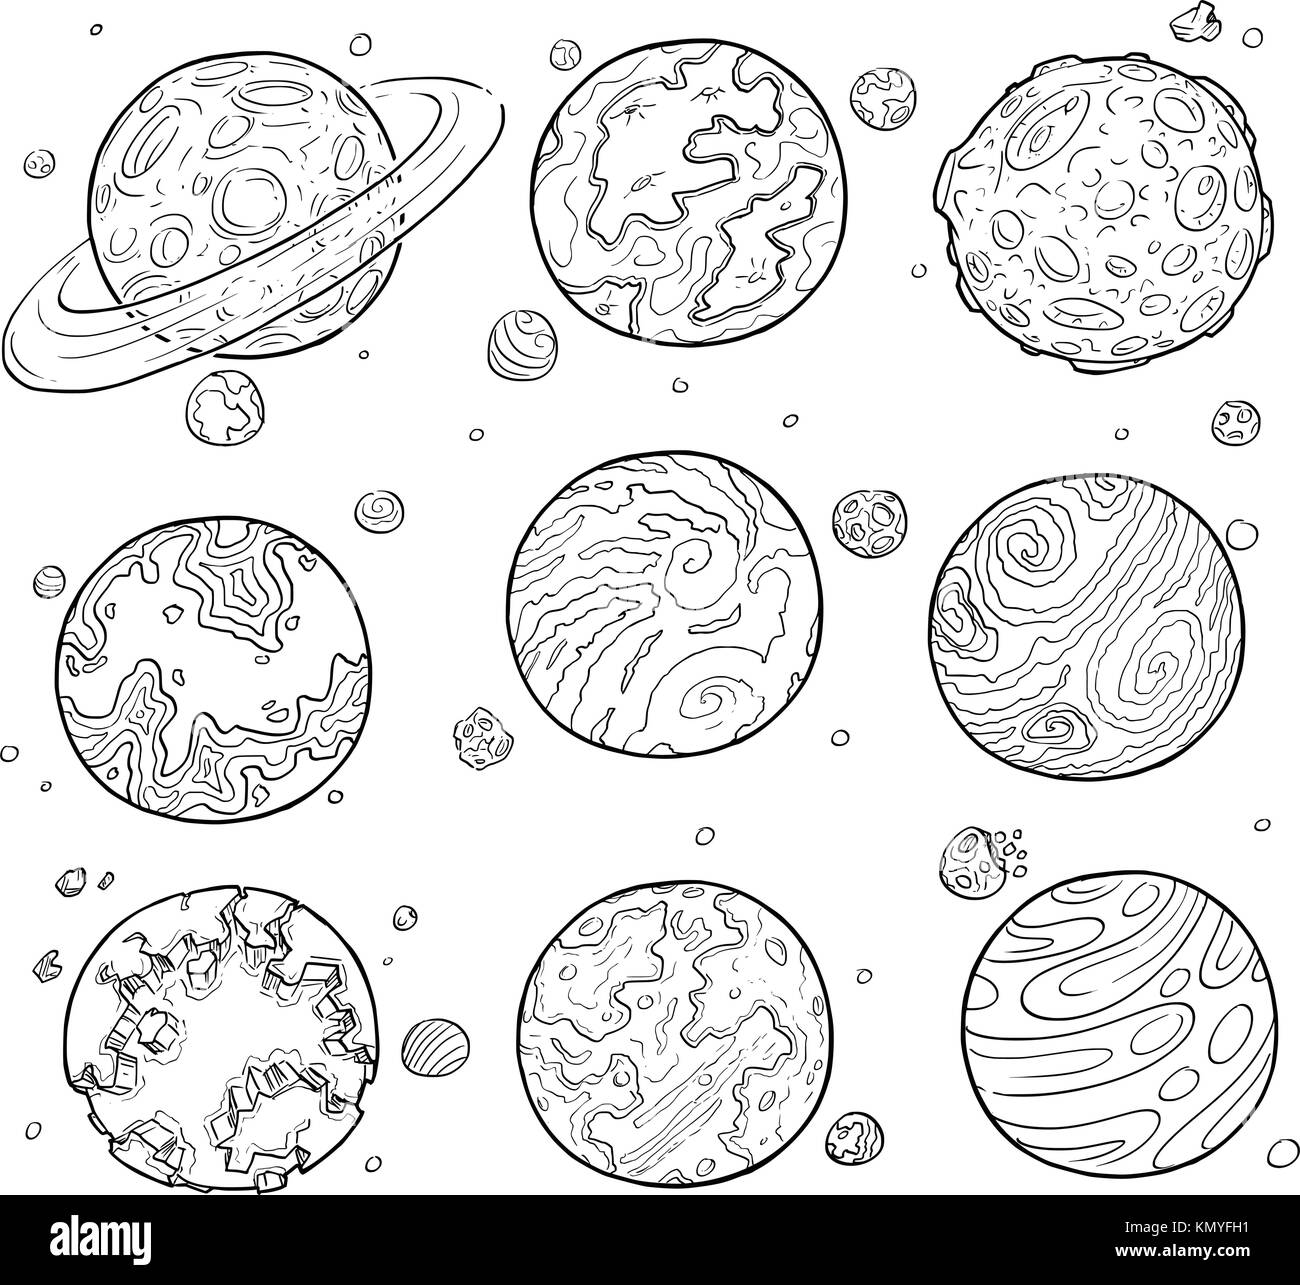 Eingestellt von Cartoon Vektor doodle Zeichnung Abbildung von fremden Planeten und Monde. Stock Vektor